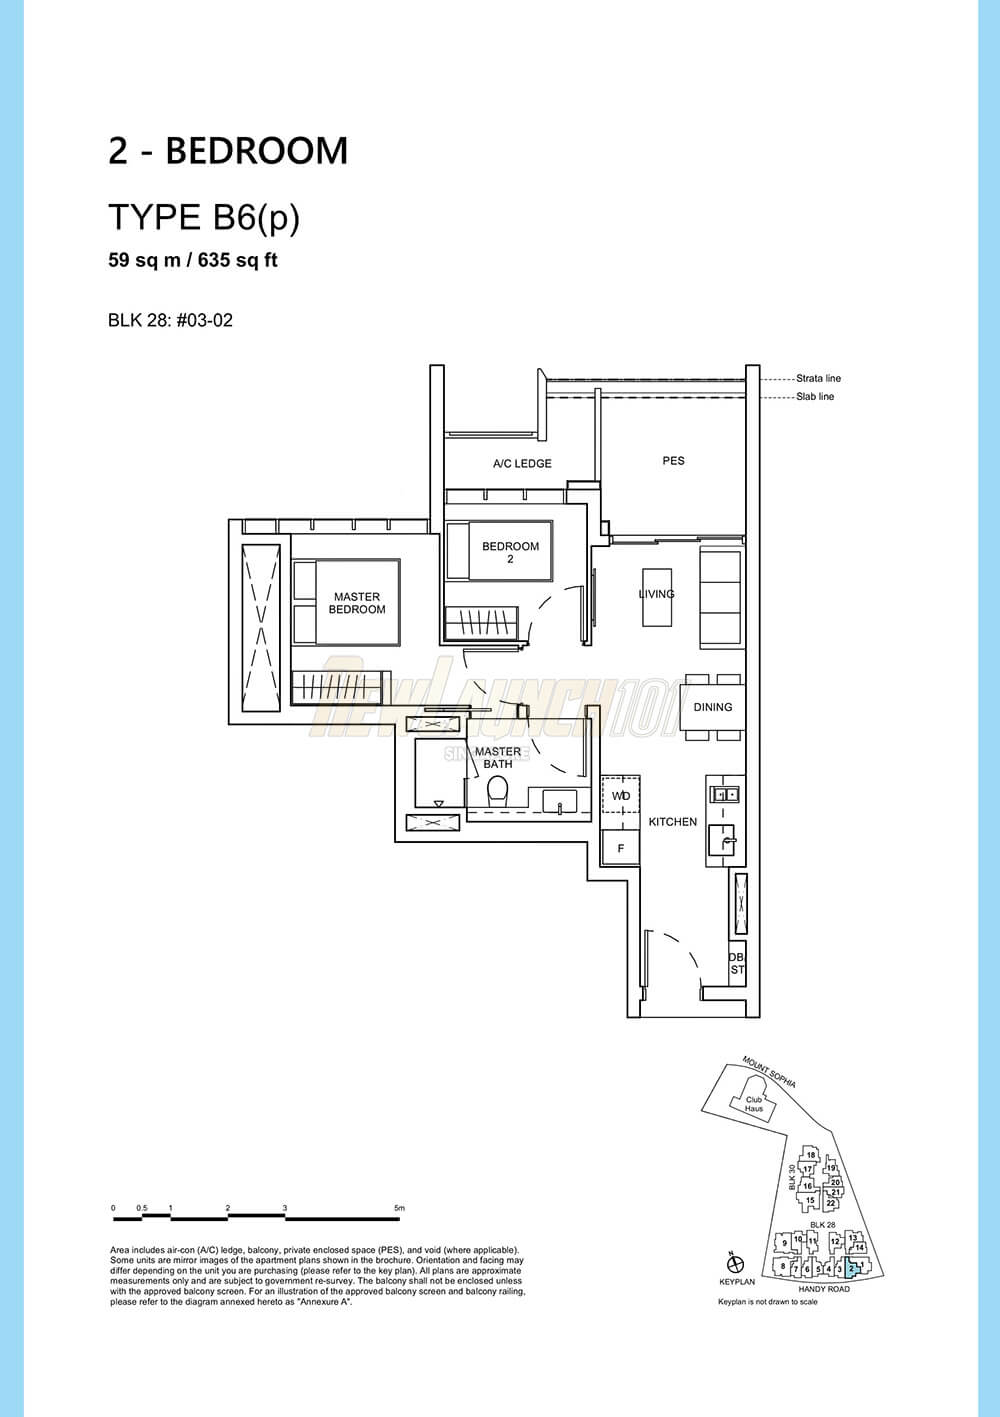 Haus on Handy Floor Plan 2-Bedroom Type B6p